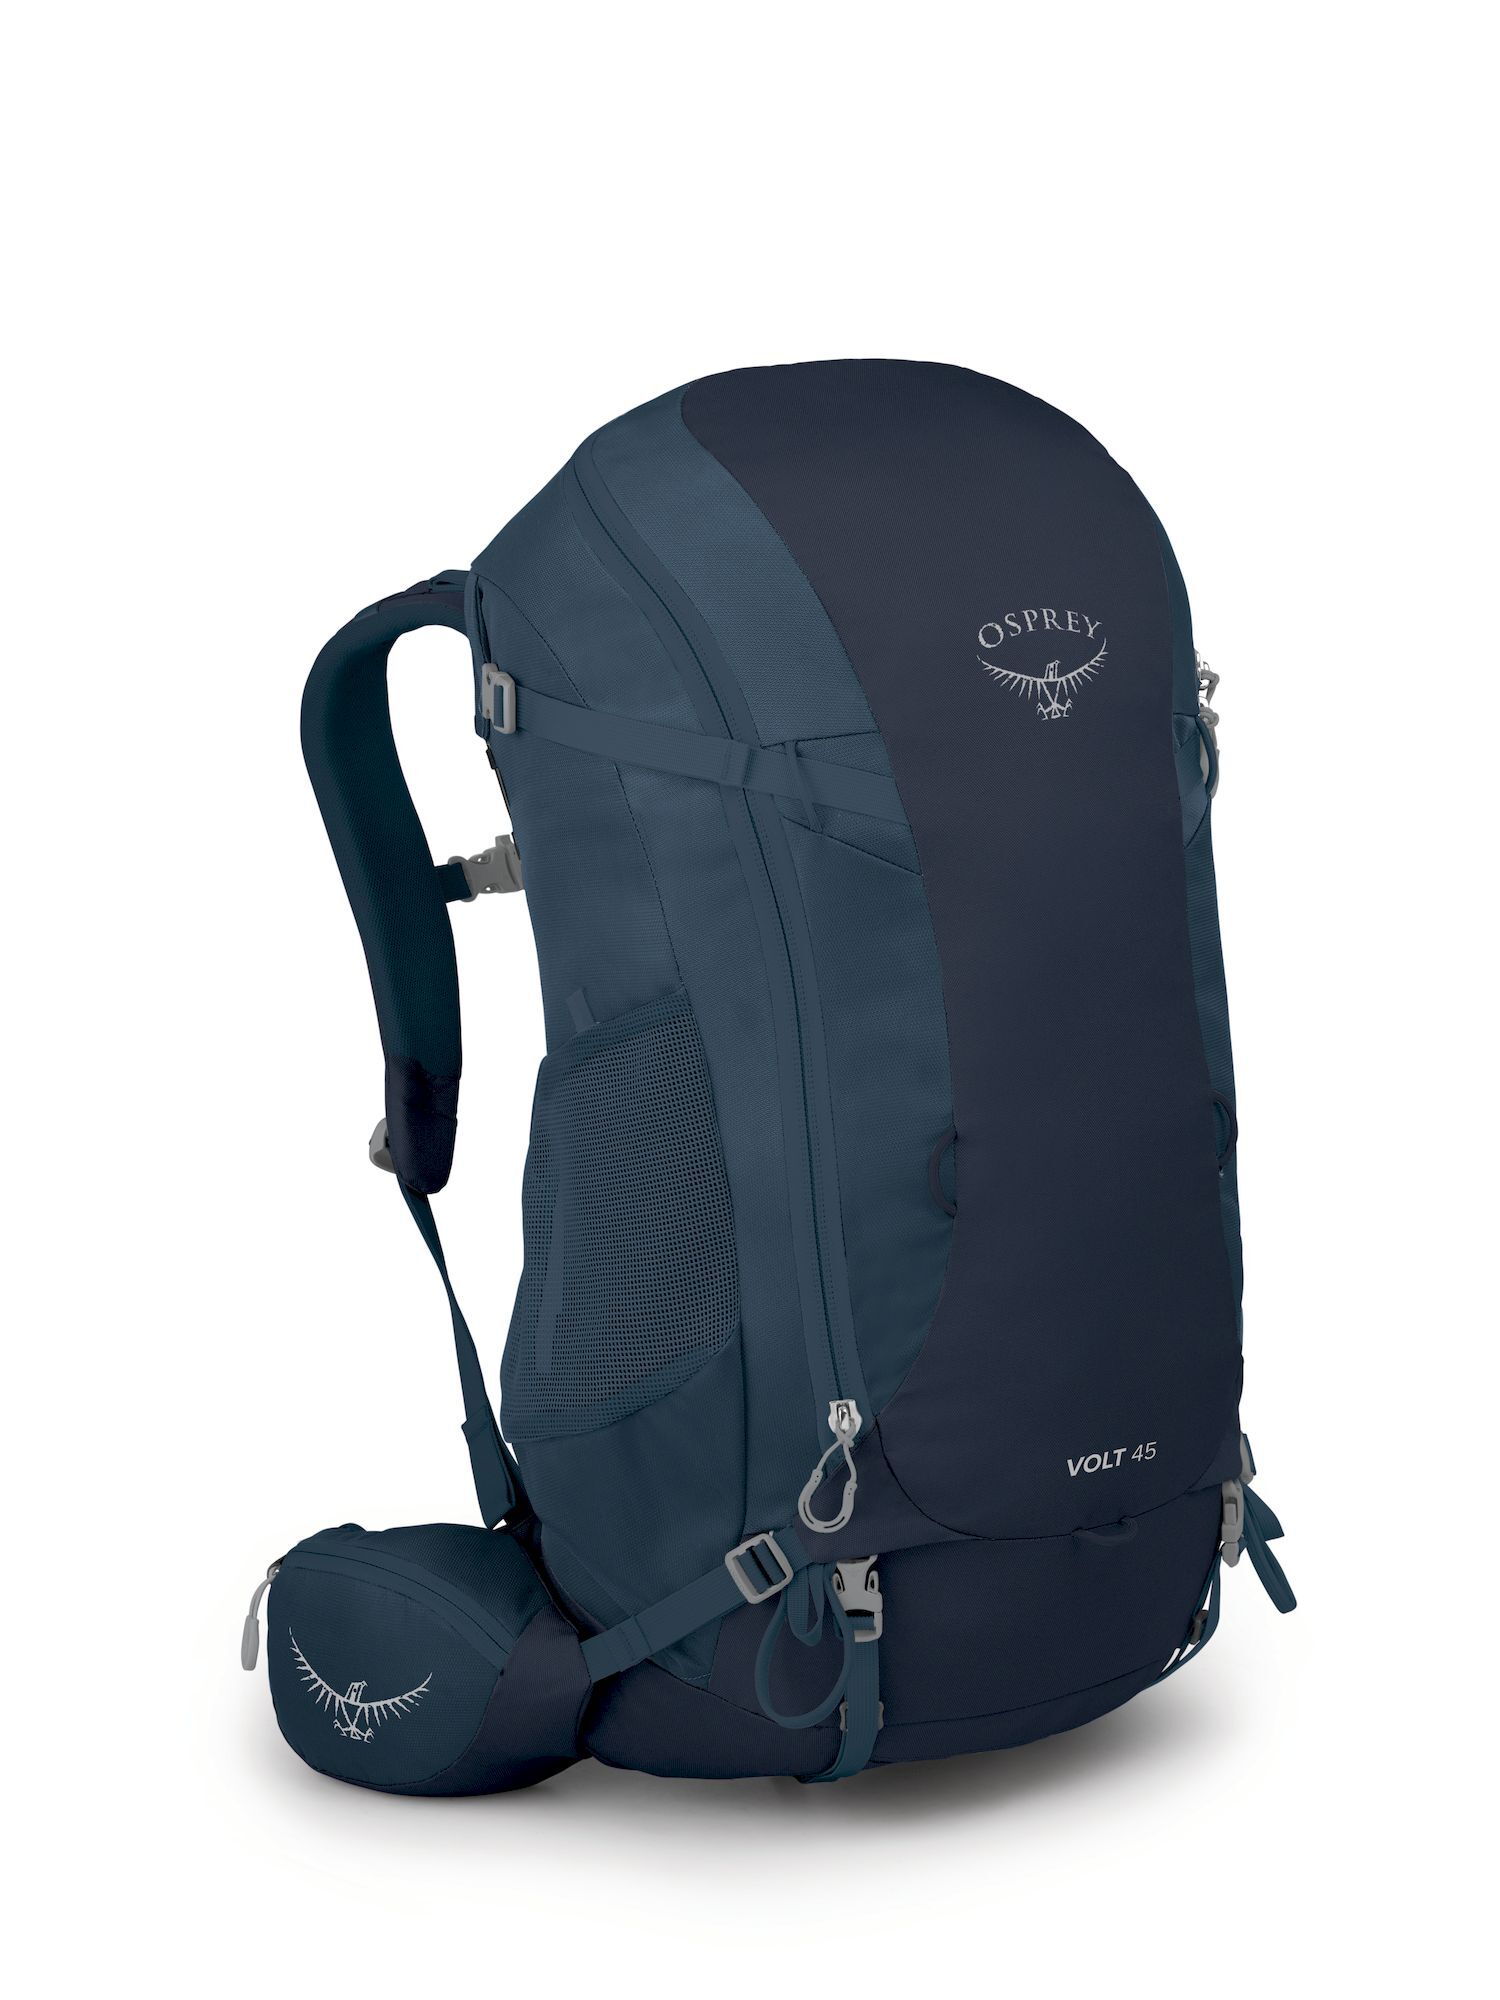 Osprey Volt 45 - Hiking backpack - Men's | Hardloop